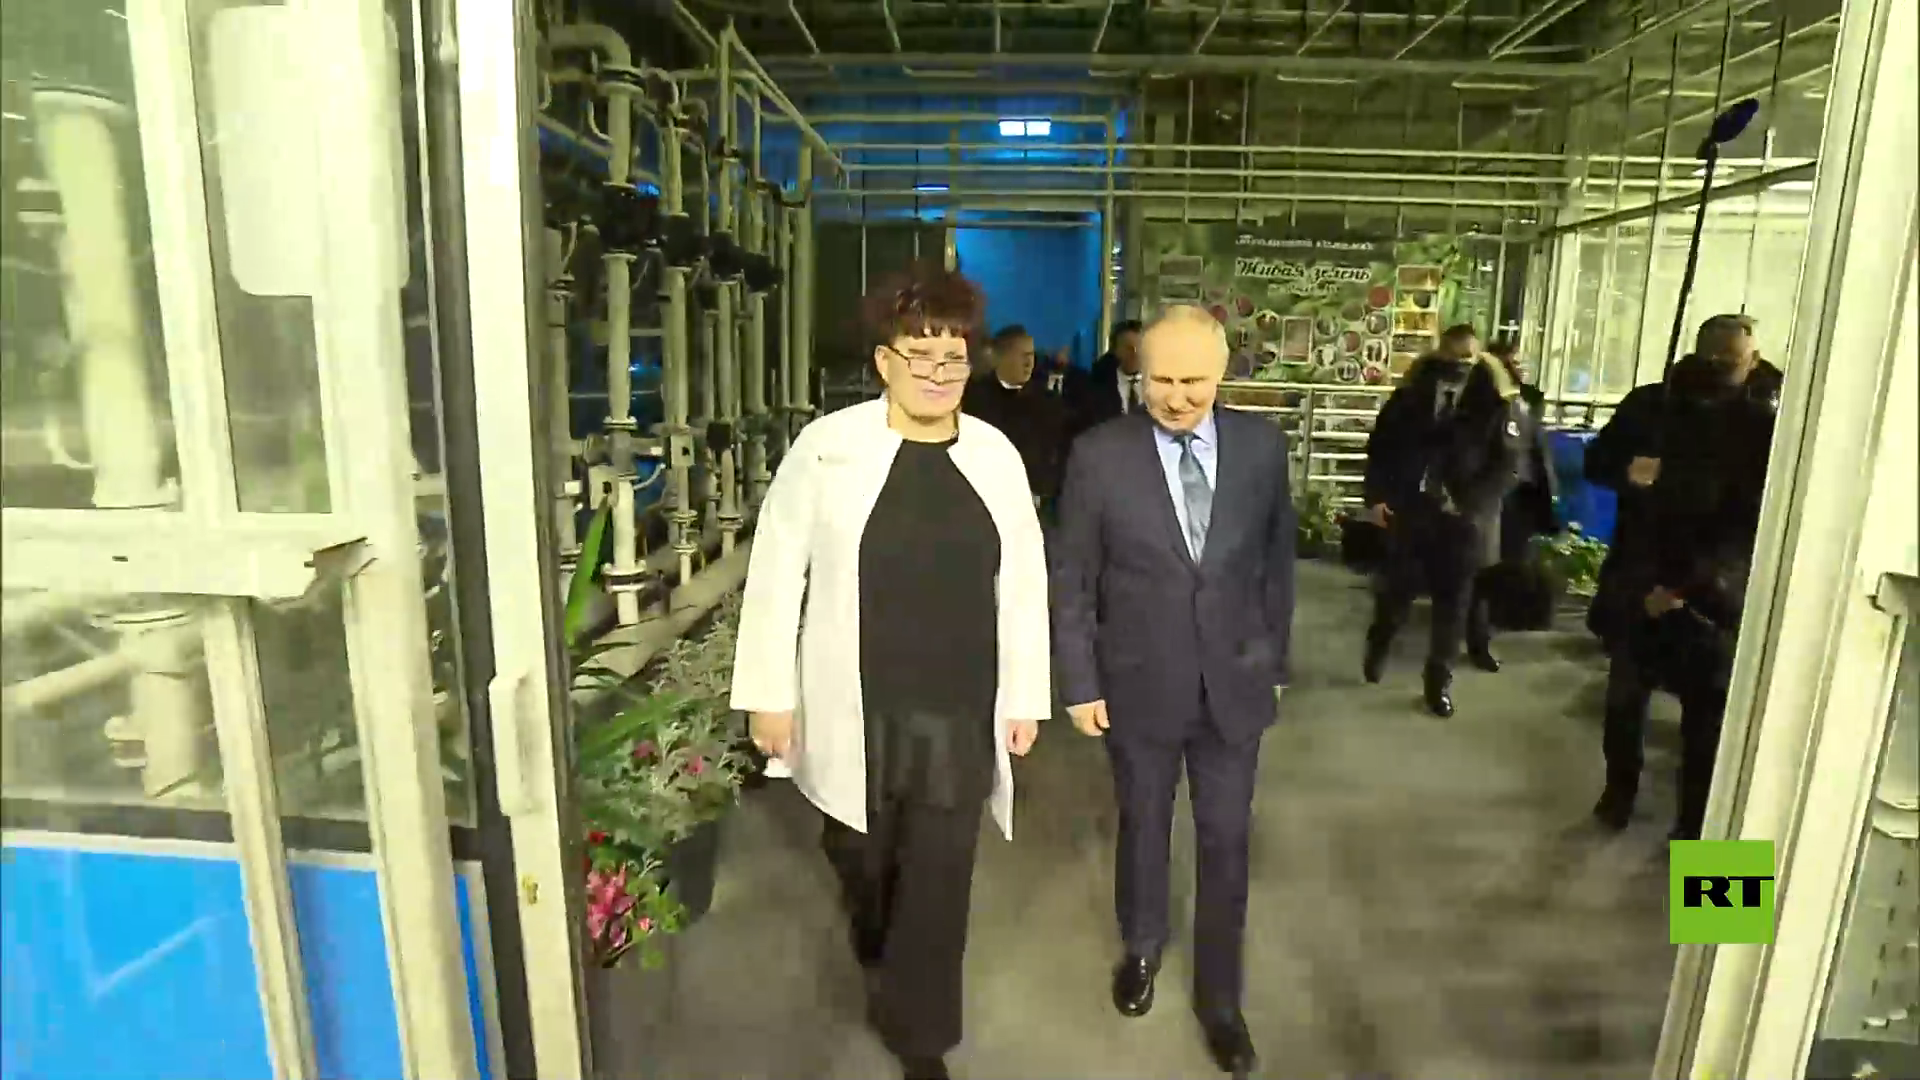 مشاهد من زيارة الرئيس بوتين إلى مدينة أنادير في الشرق الأقصى الروسي